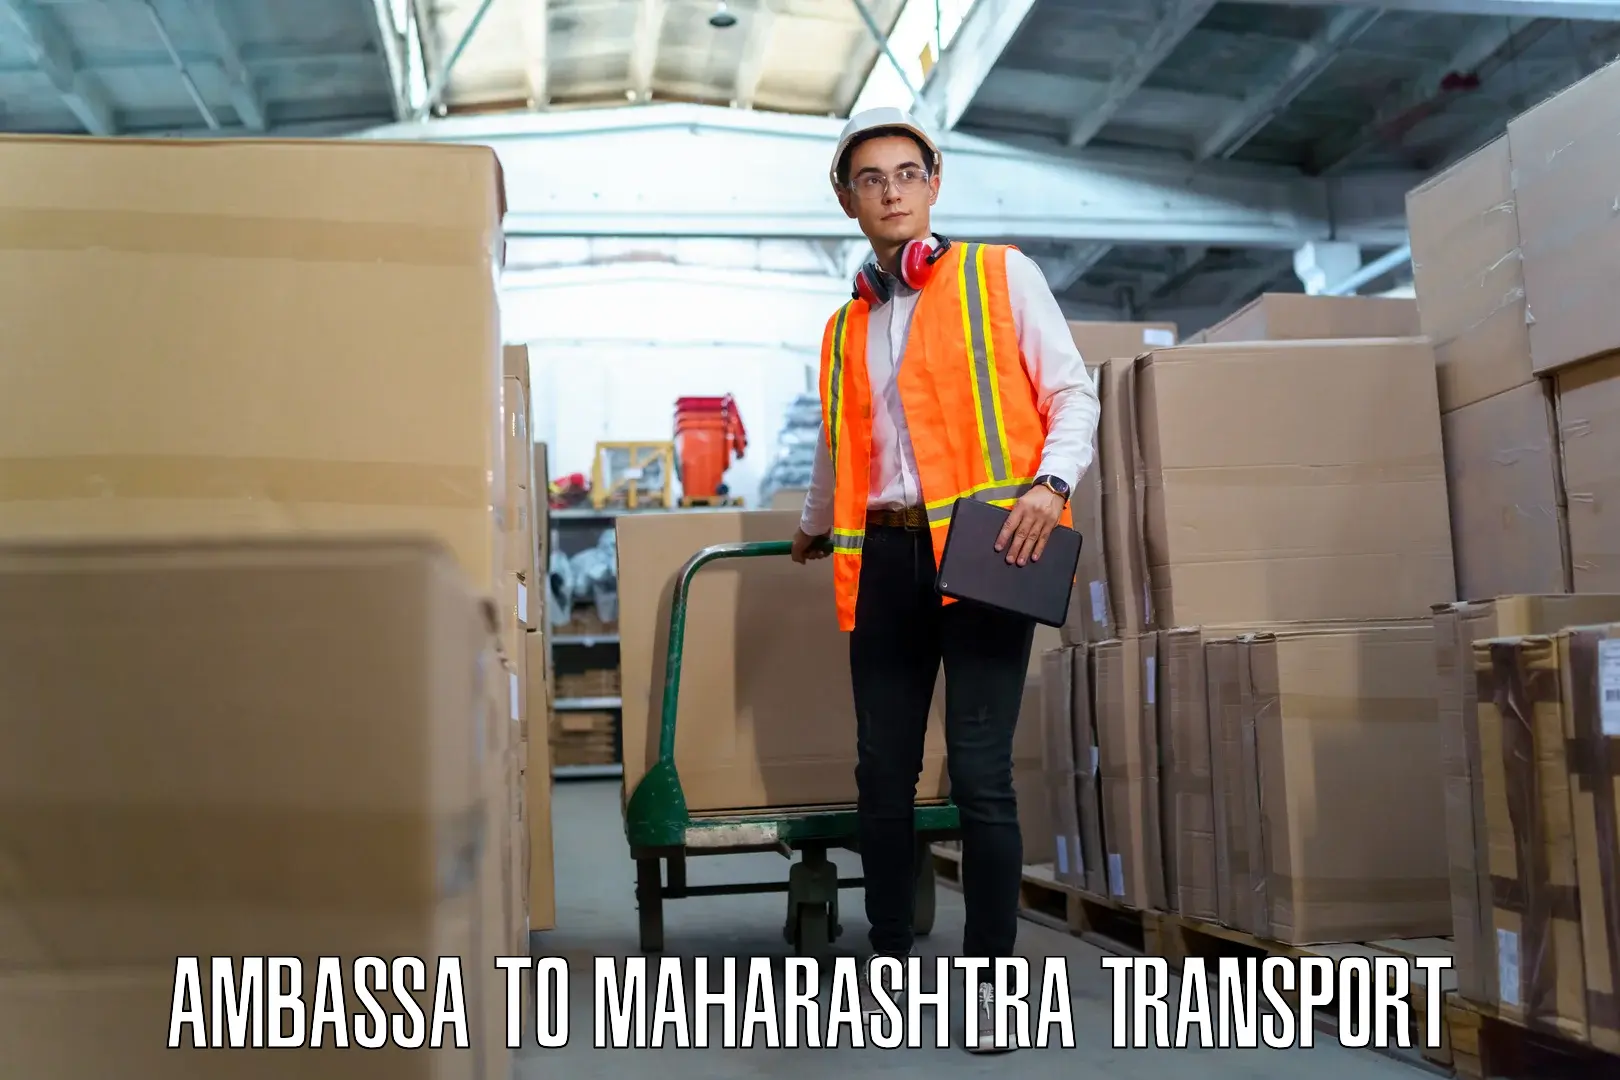 Part load transport service in India Ambassa to IIT Mumbai